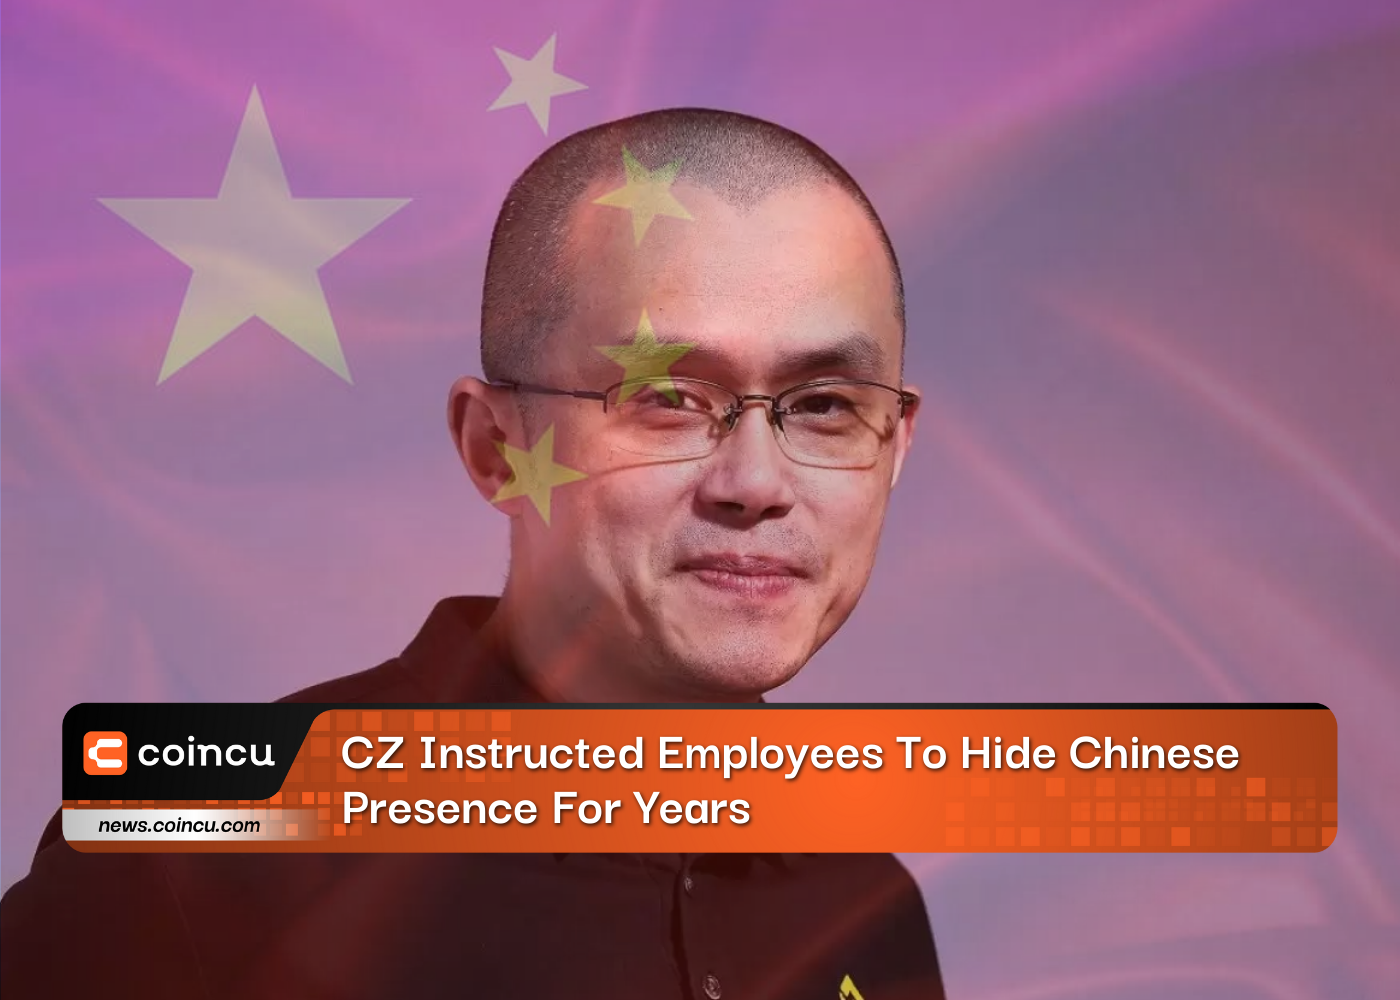 सीजेड ने कर्मचारियों को वर्षों तक चीनी उपस्थिति छुपाने का निर्देश दिया